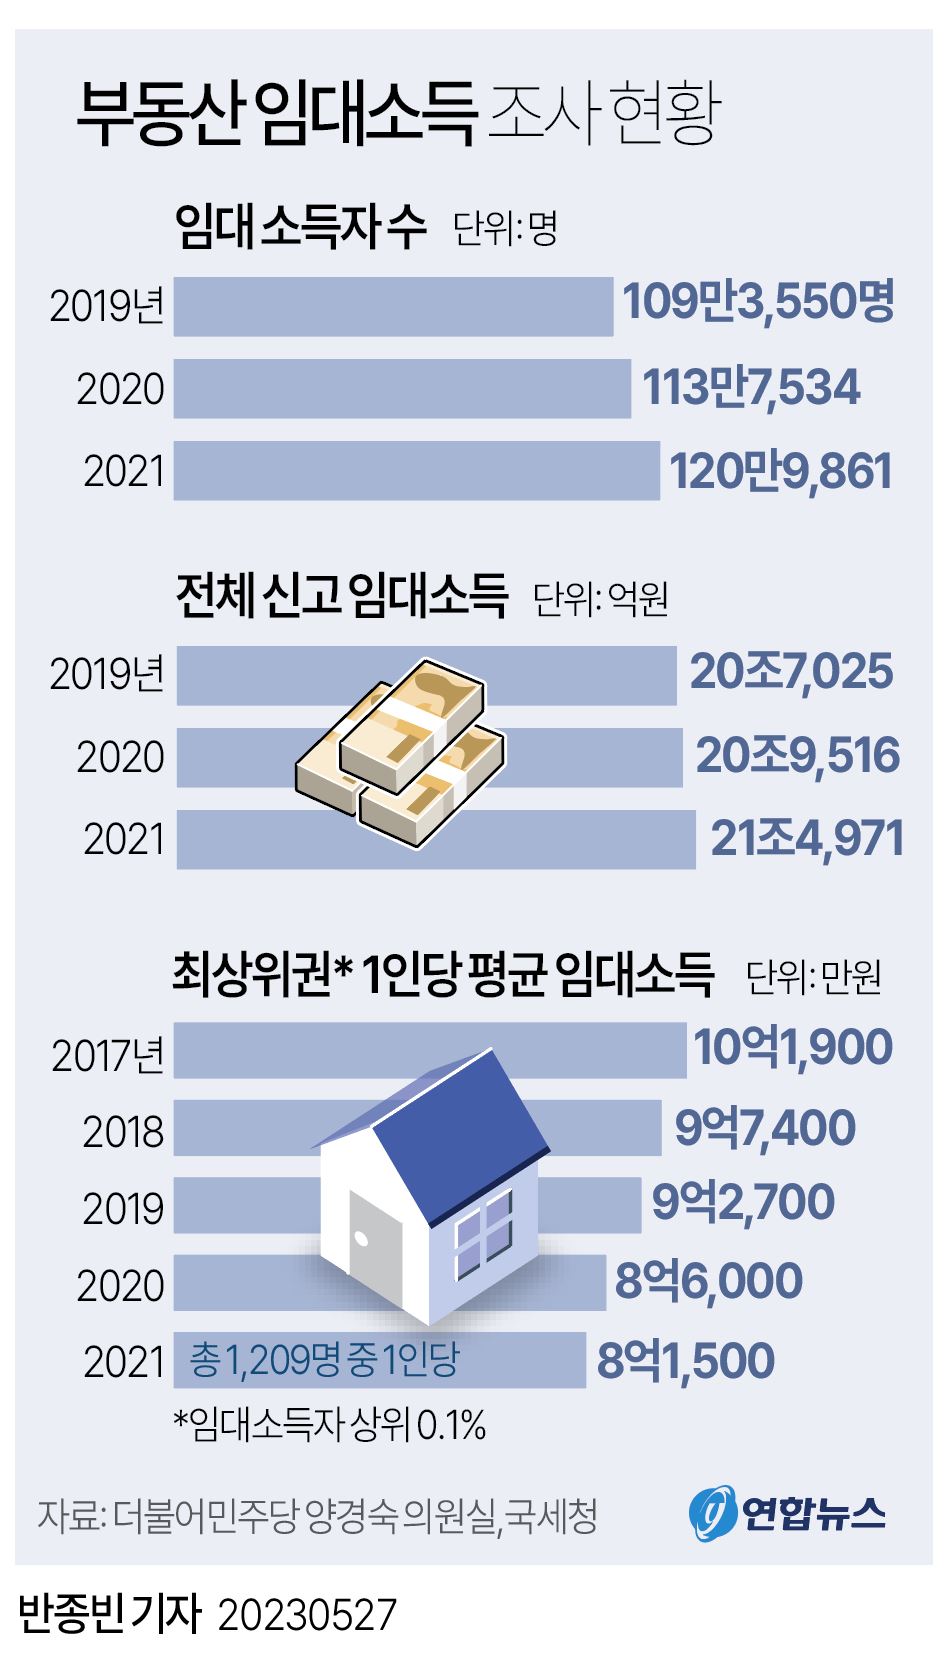 [그래픽] 부동산 임대소득 조사 현황